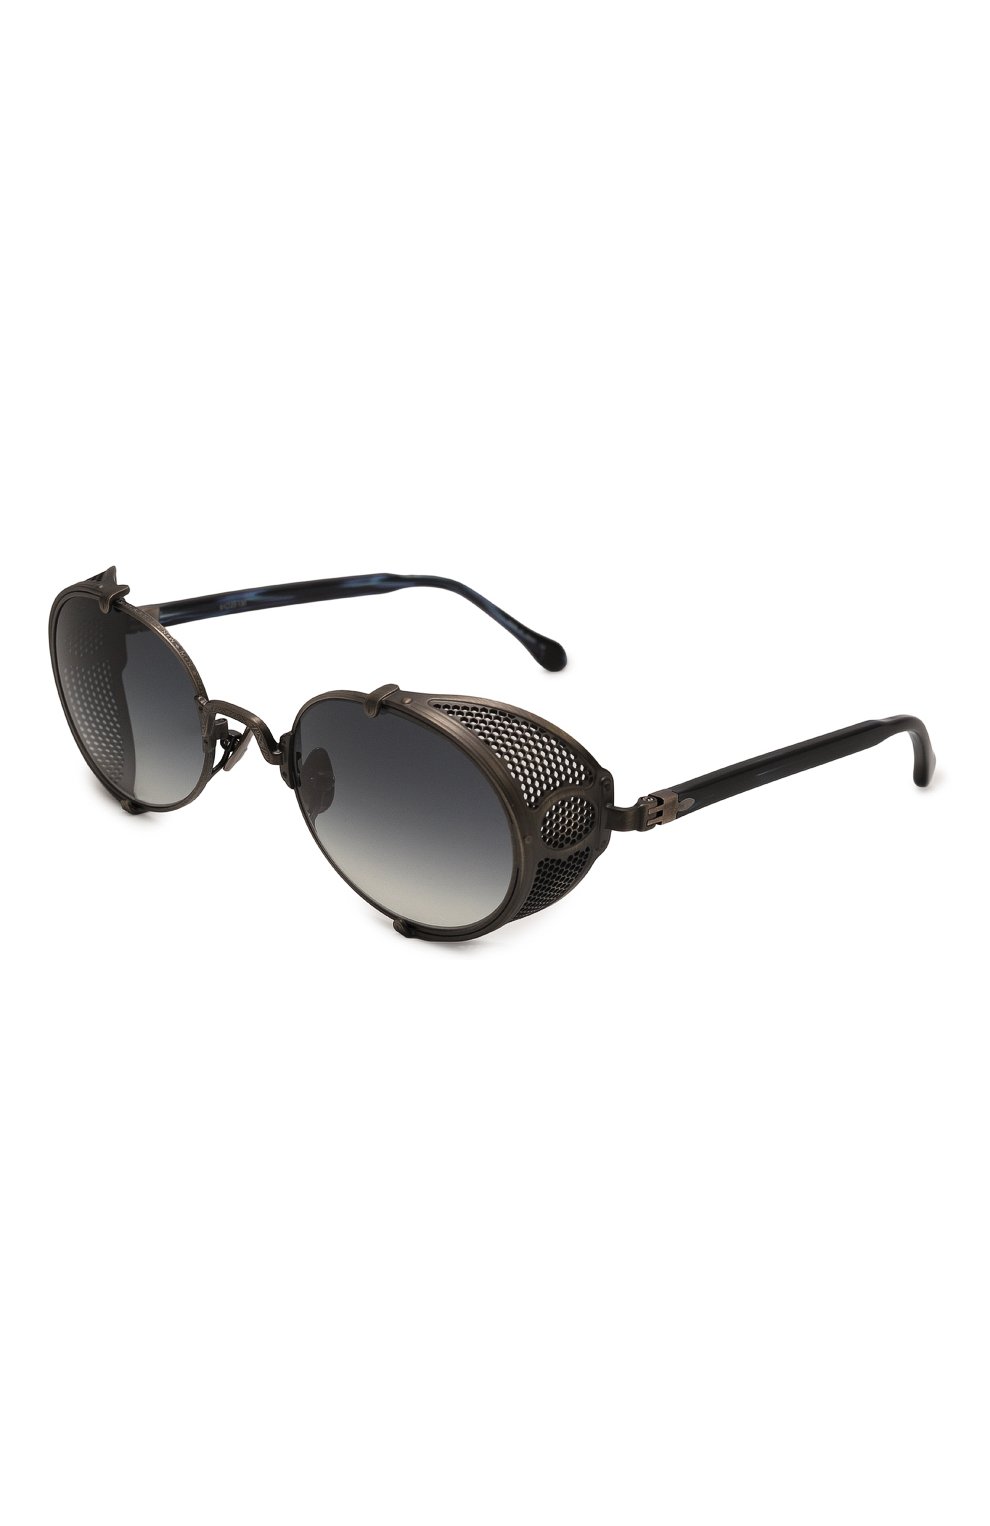 Солнцезащитные очки с шорами - выбор стильного летнего аксессуара